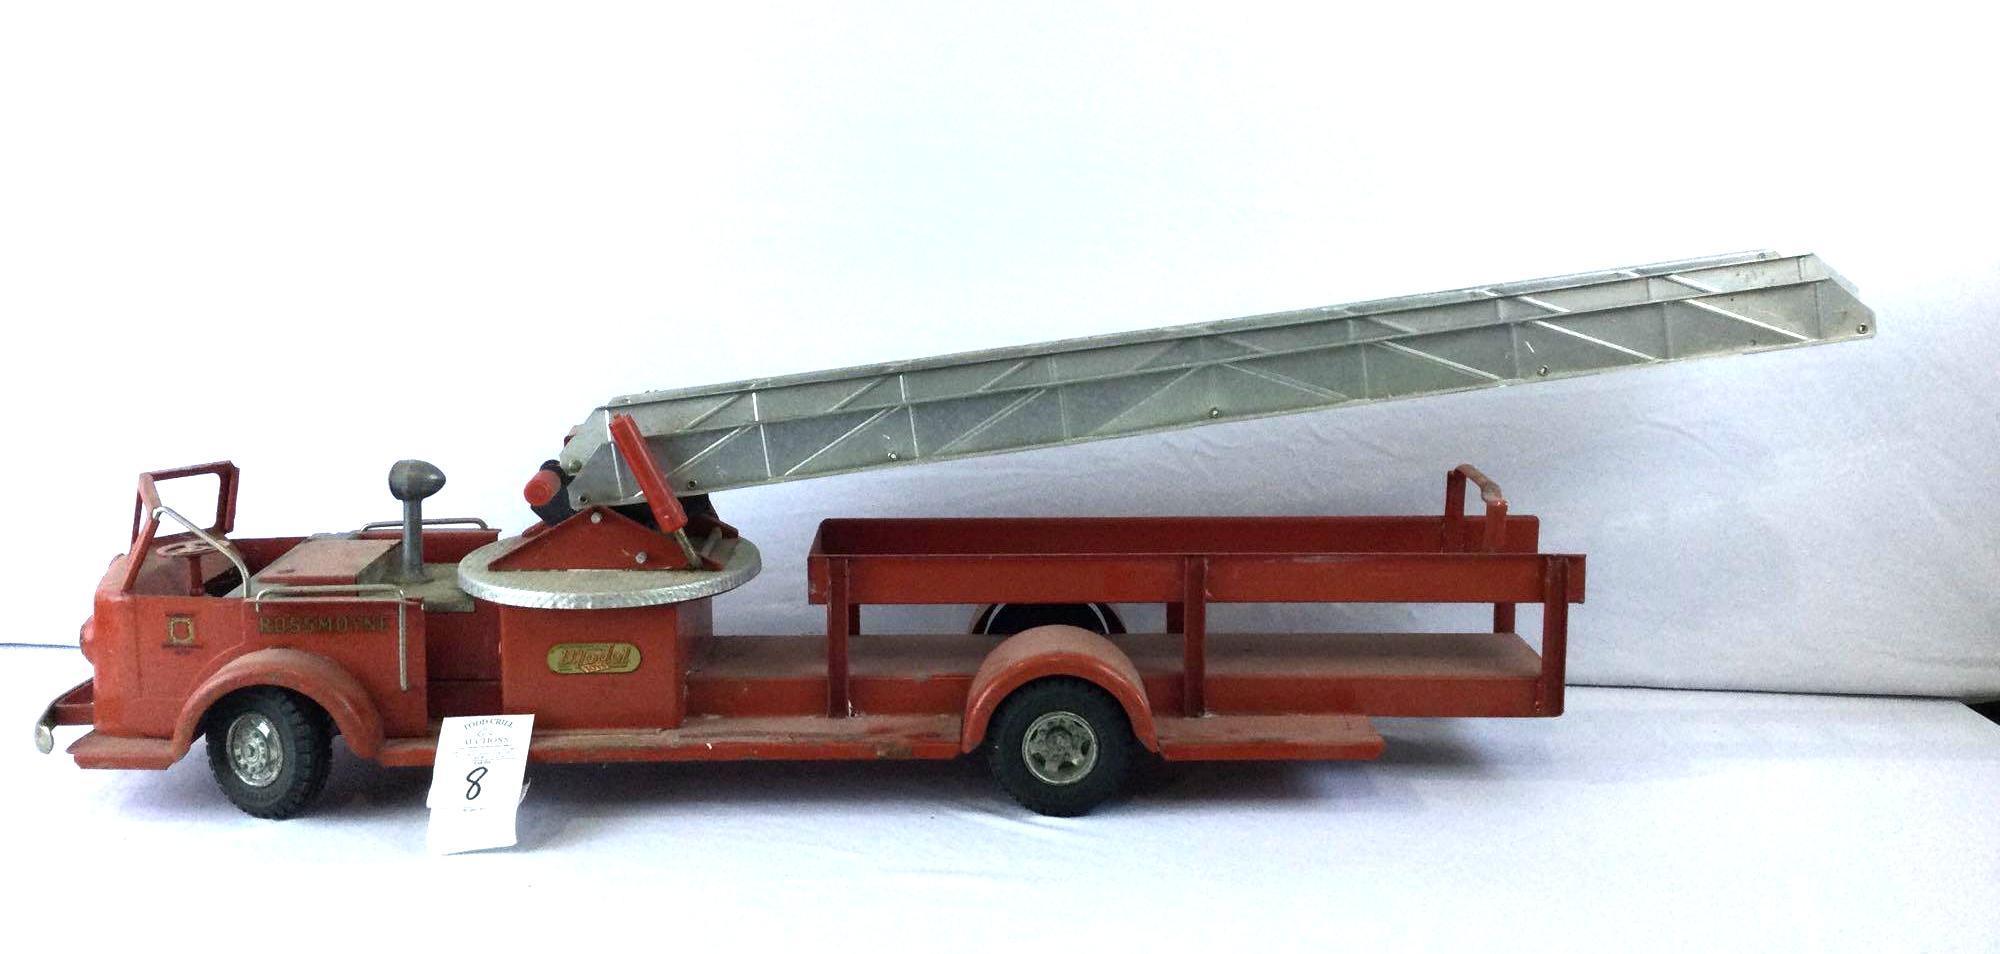 Doepke Model Toys Rossmoyne Fire Truck With Ladder